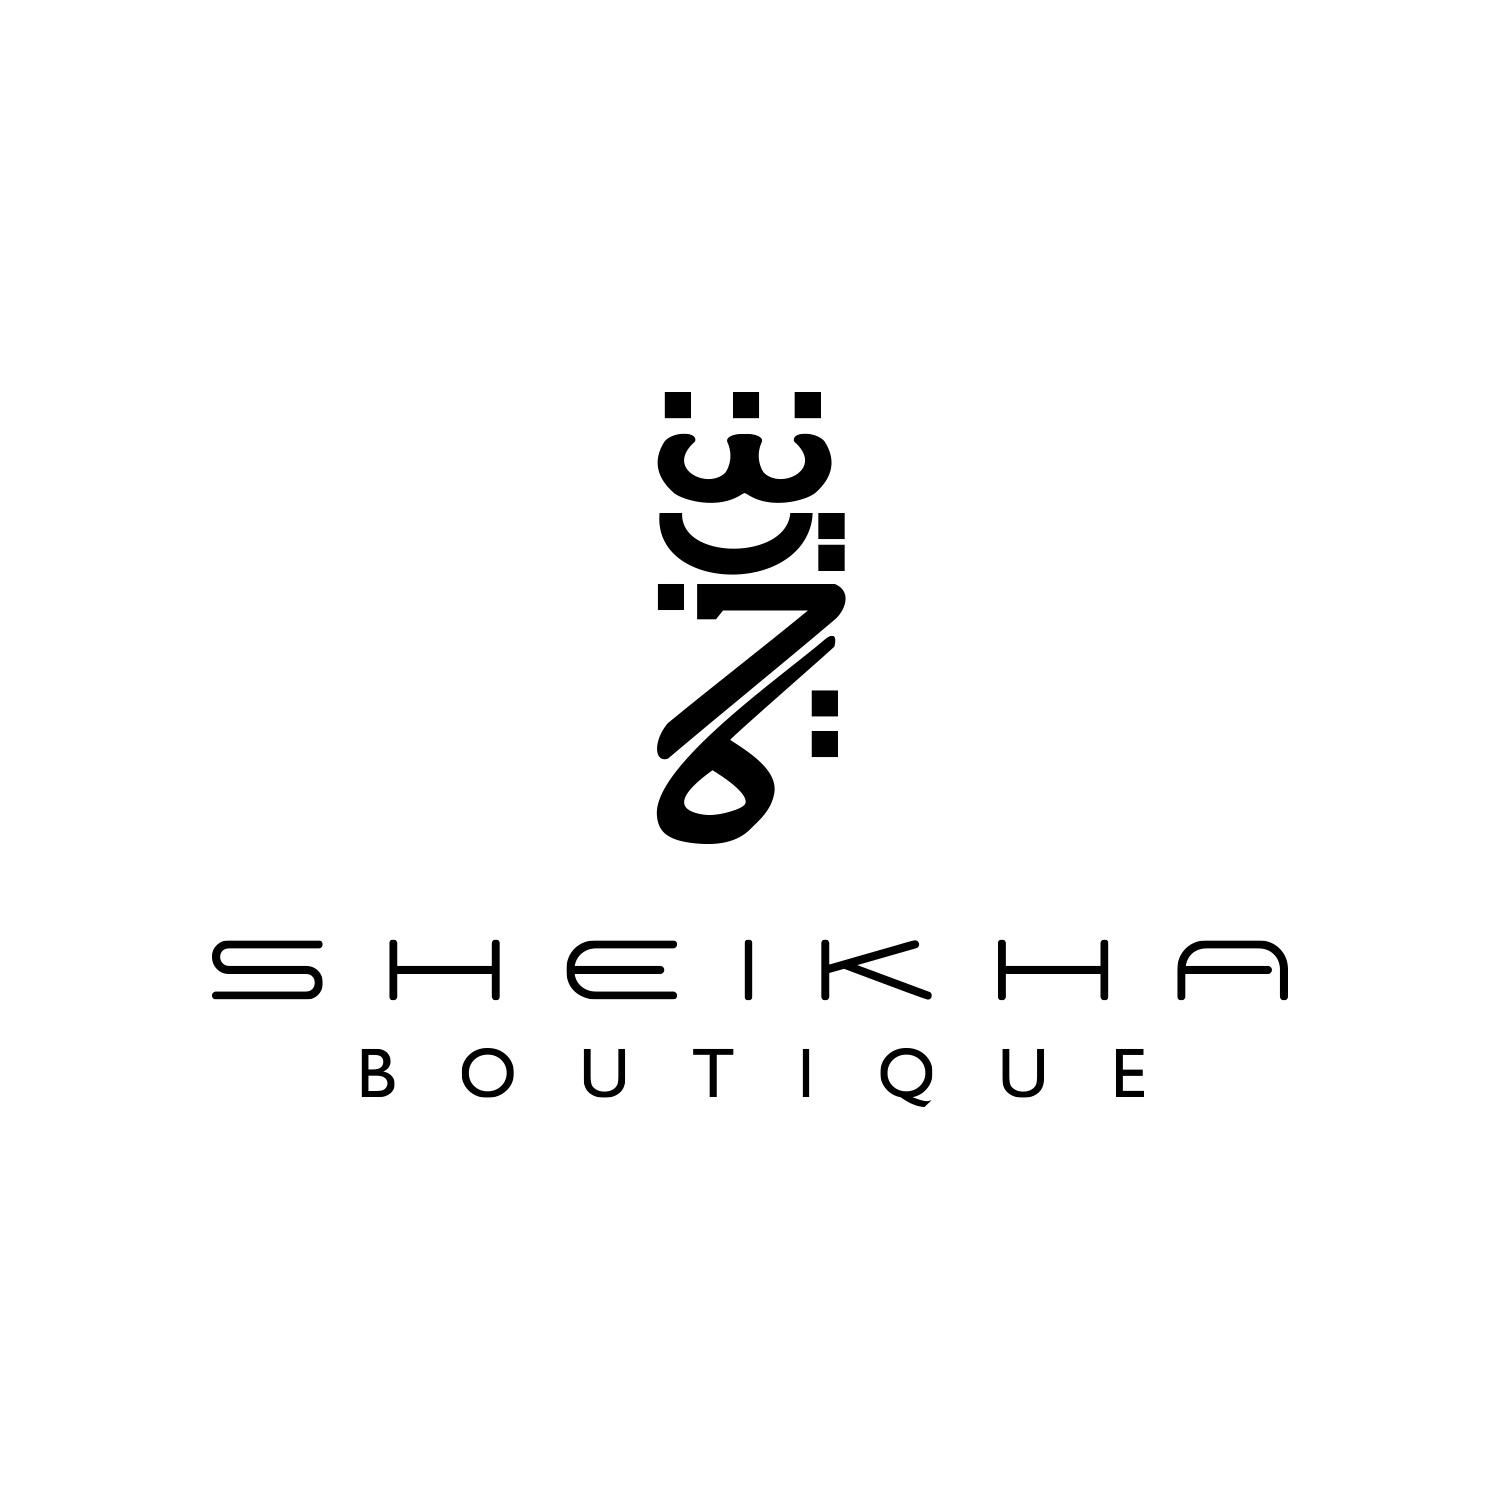 Sheikhaboutique